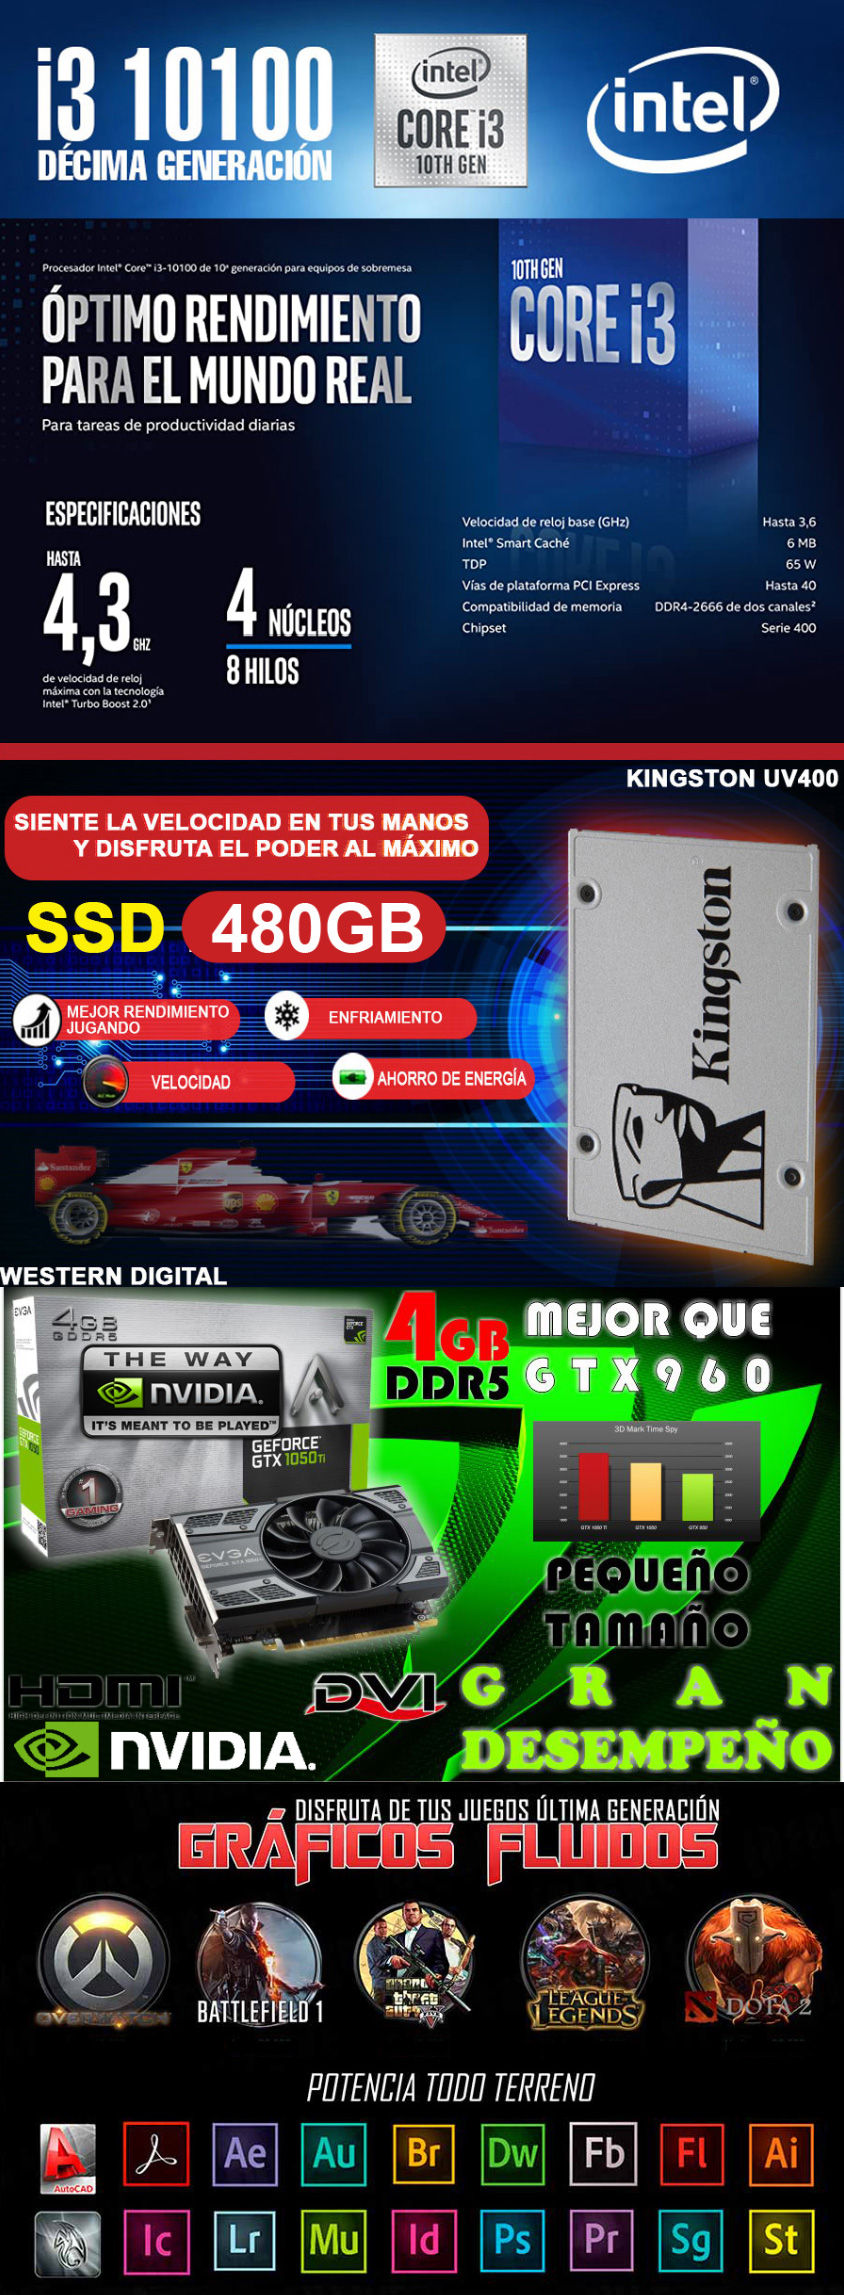 Computador Pichau Gamer, Intel i3-12100F, Radeon RX 6400 4GB, 8GB DDR4, SSD  240GB